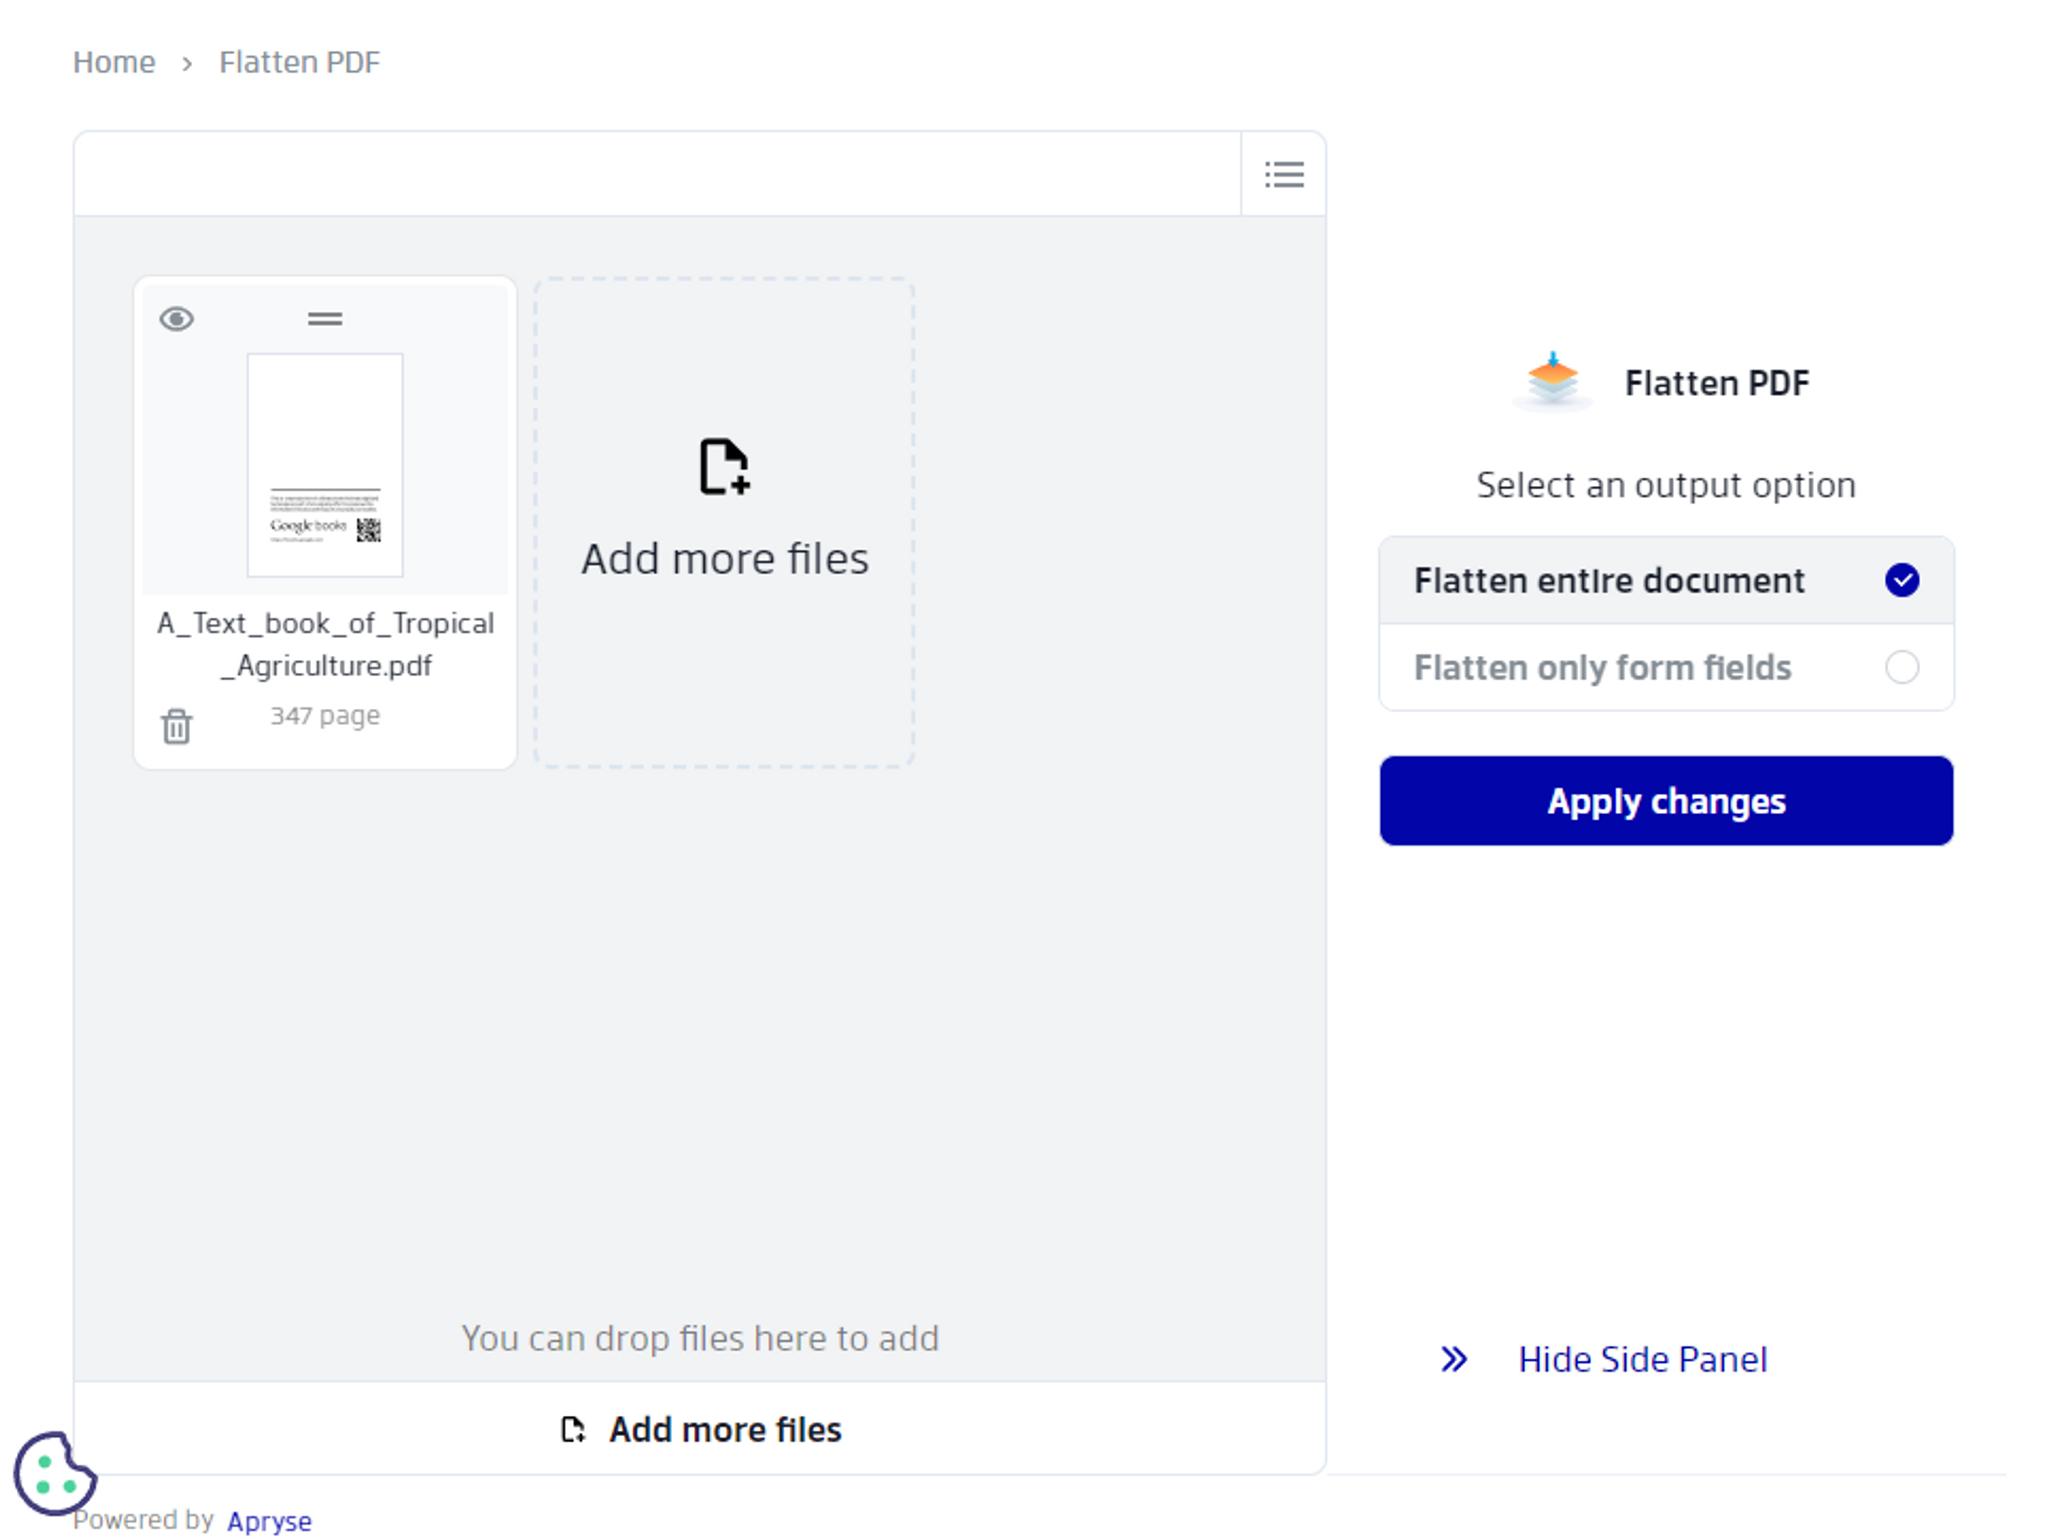 Flatten PDF options available in Xodo PDF Flattener